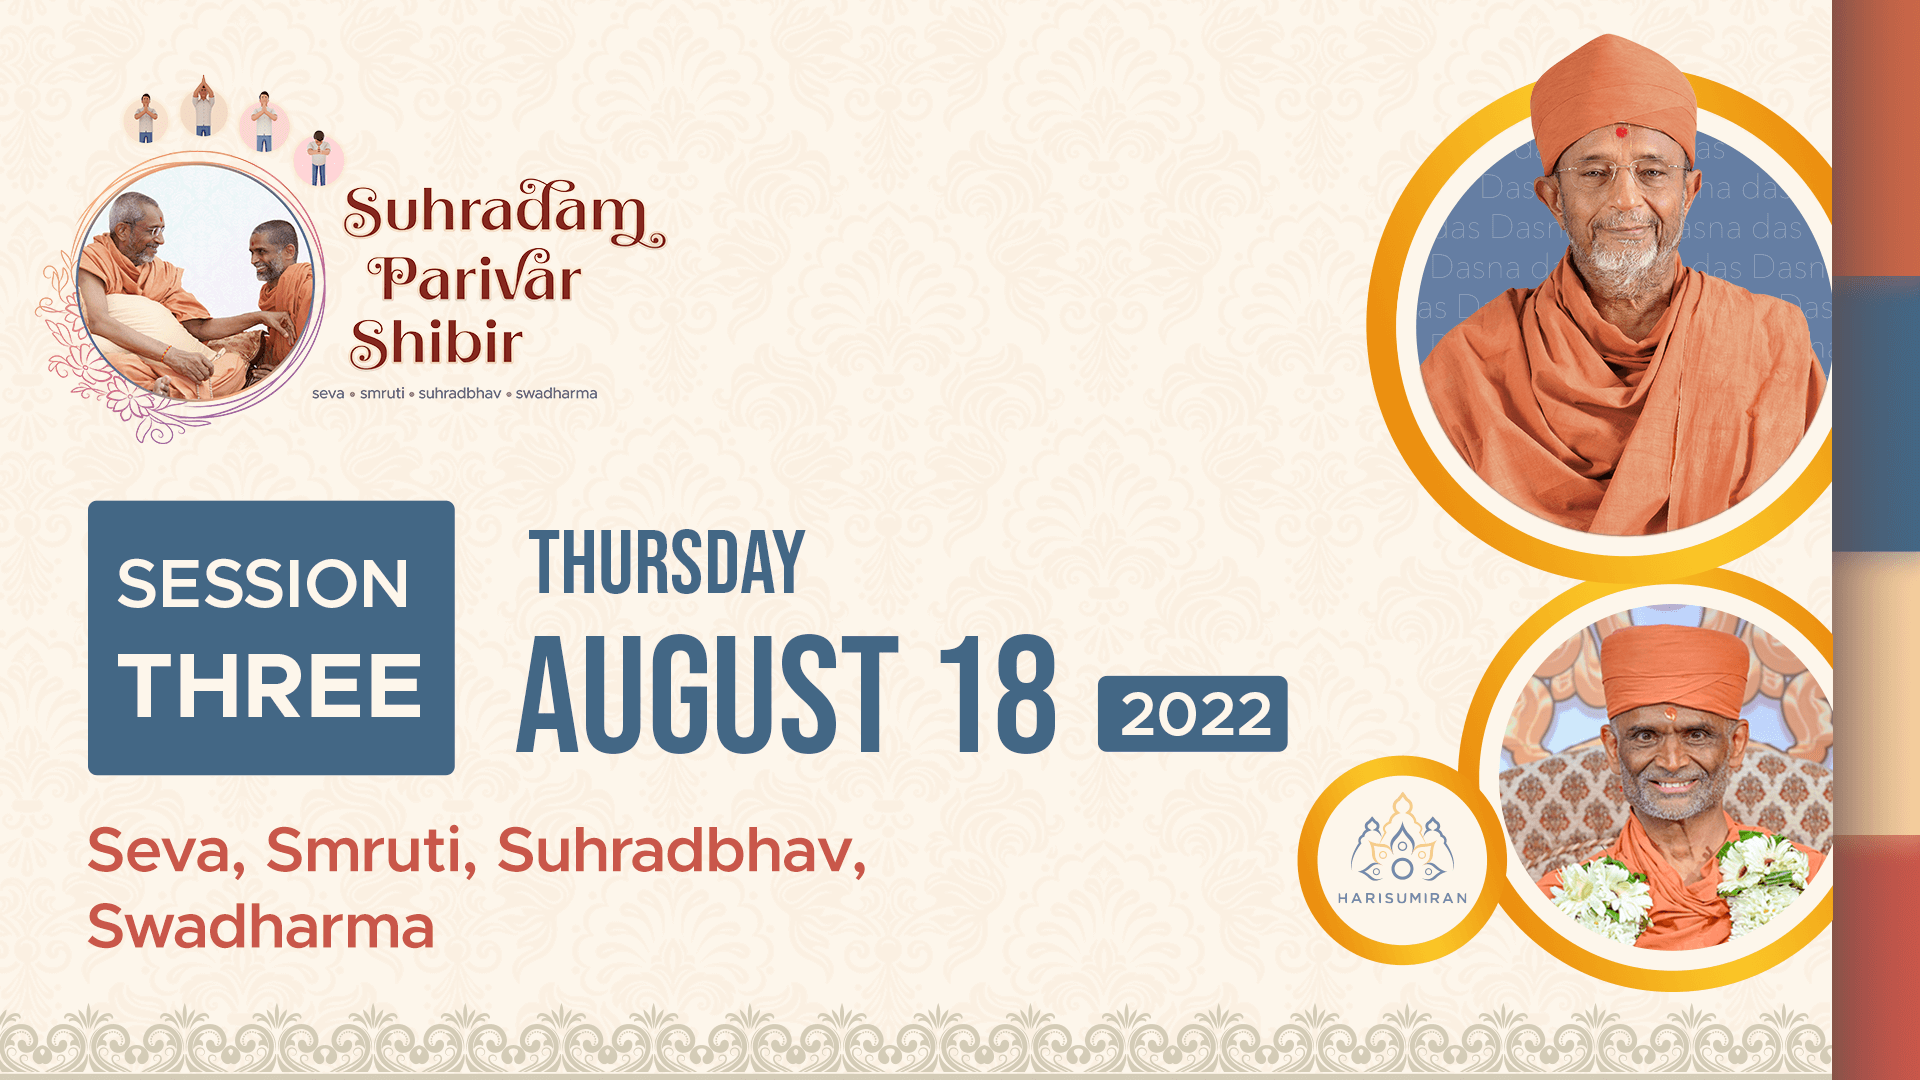 Suhradam Parivar Shibir 2022 | Session 3